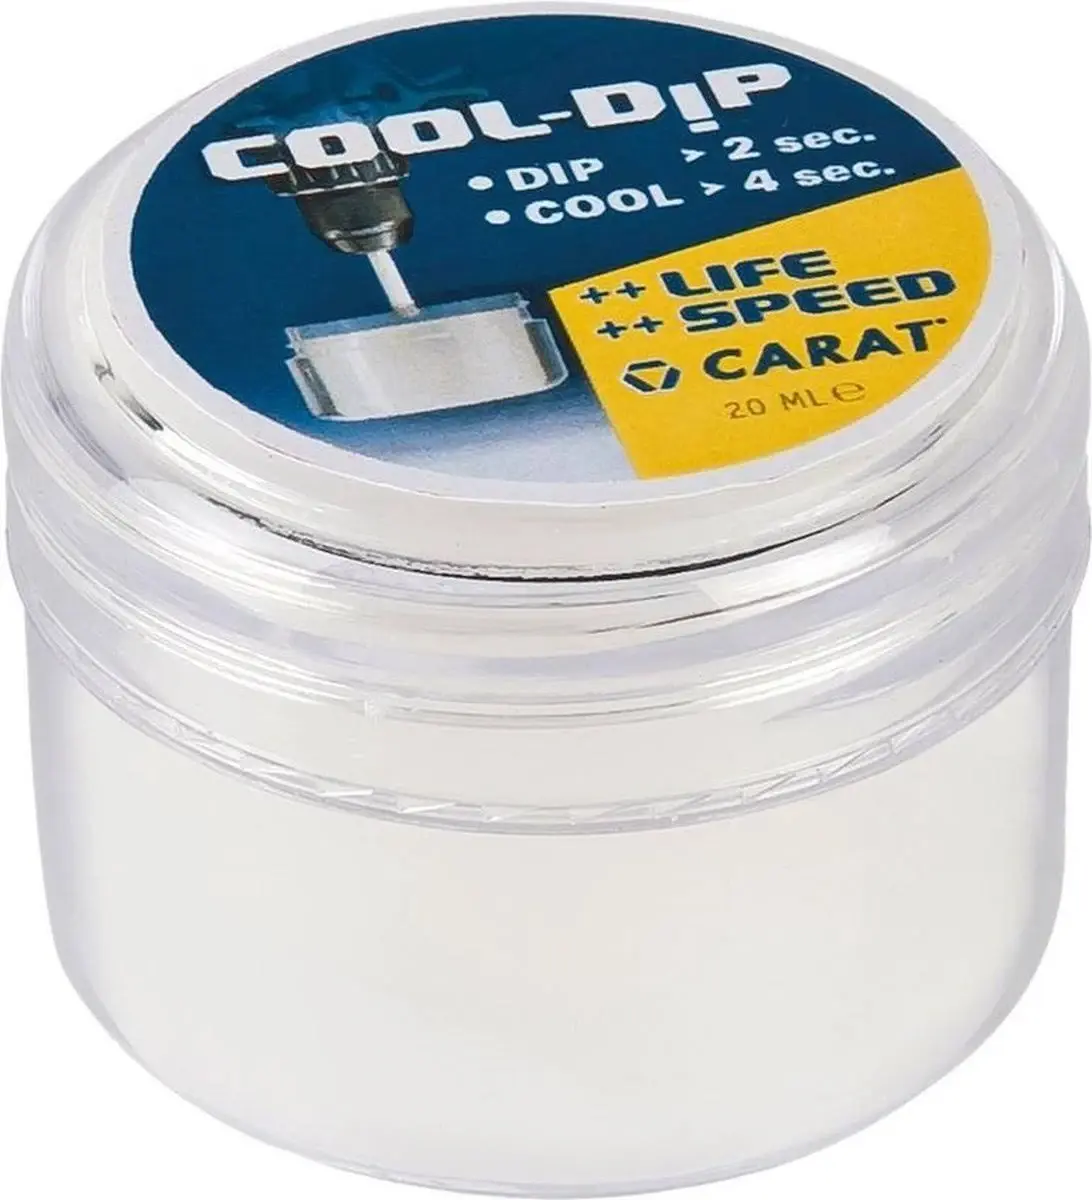 Cool-Dip Wax 20 ml